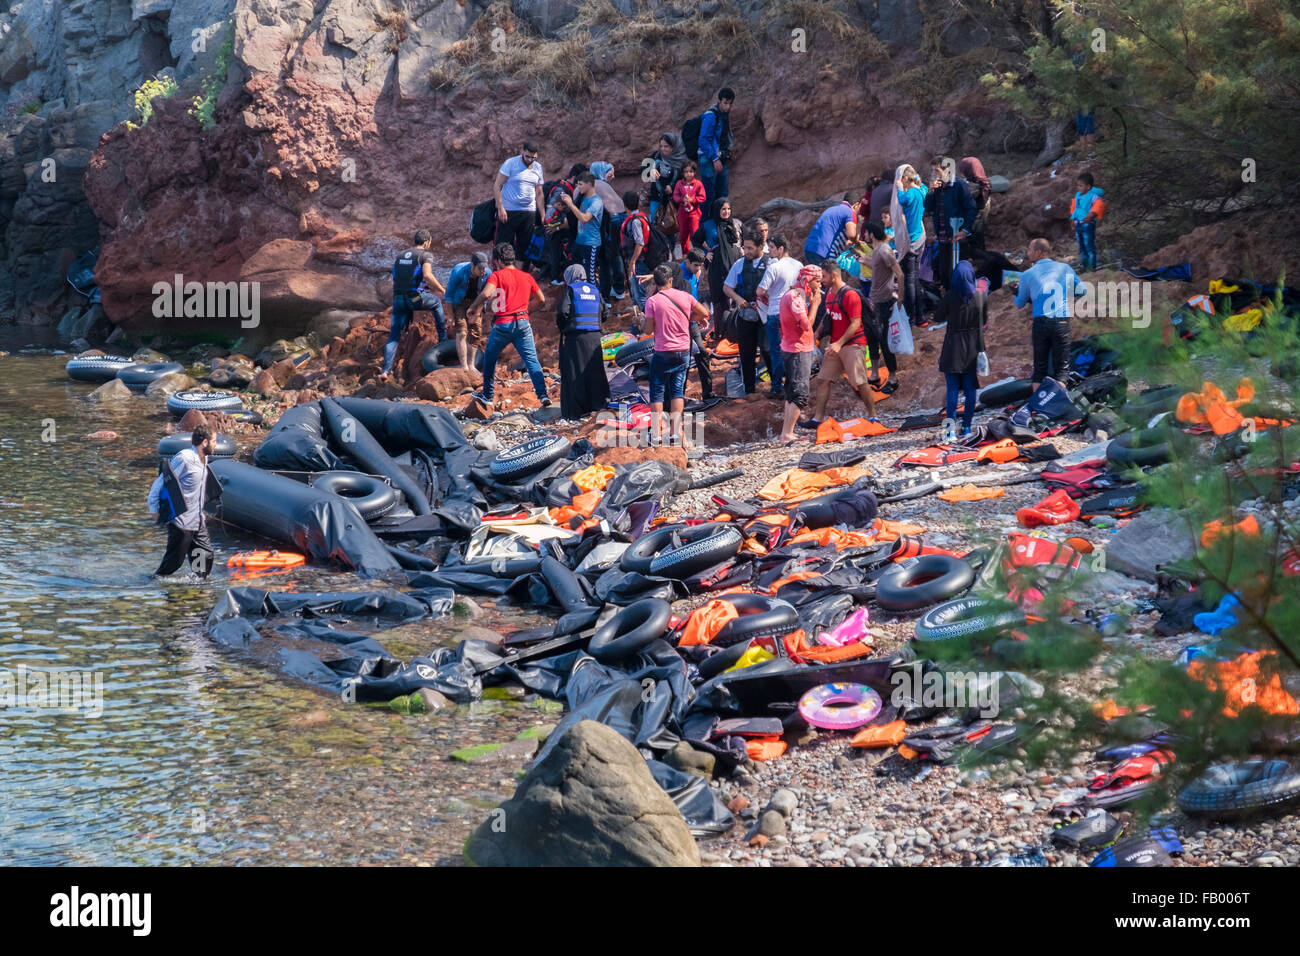 Un groupe de réfugiés afghans arrivent à Lesbos, Grèce En provenance de Turquie par radeau de caoutchouc dans une crique rempli de débris à partir de radeaux. Banque D'Images